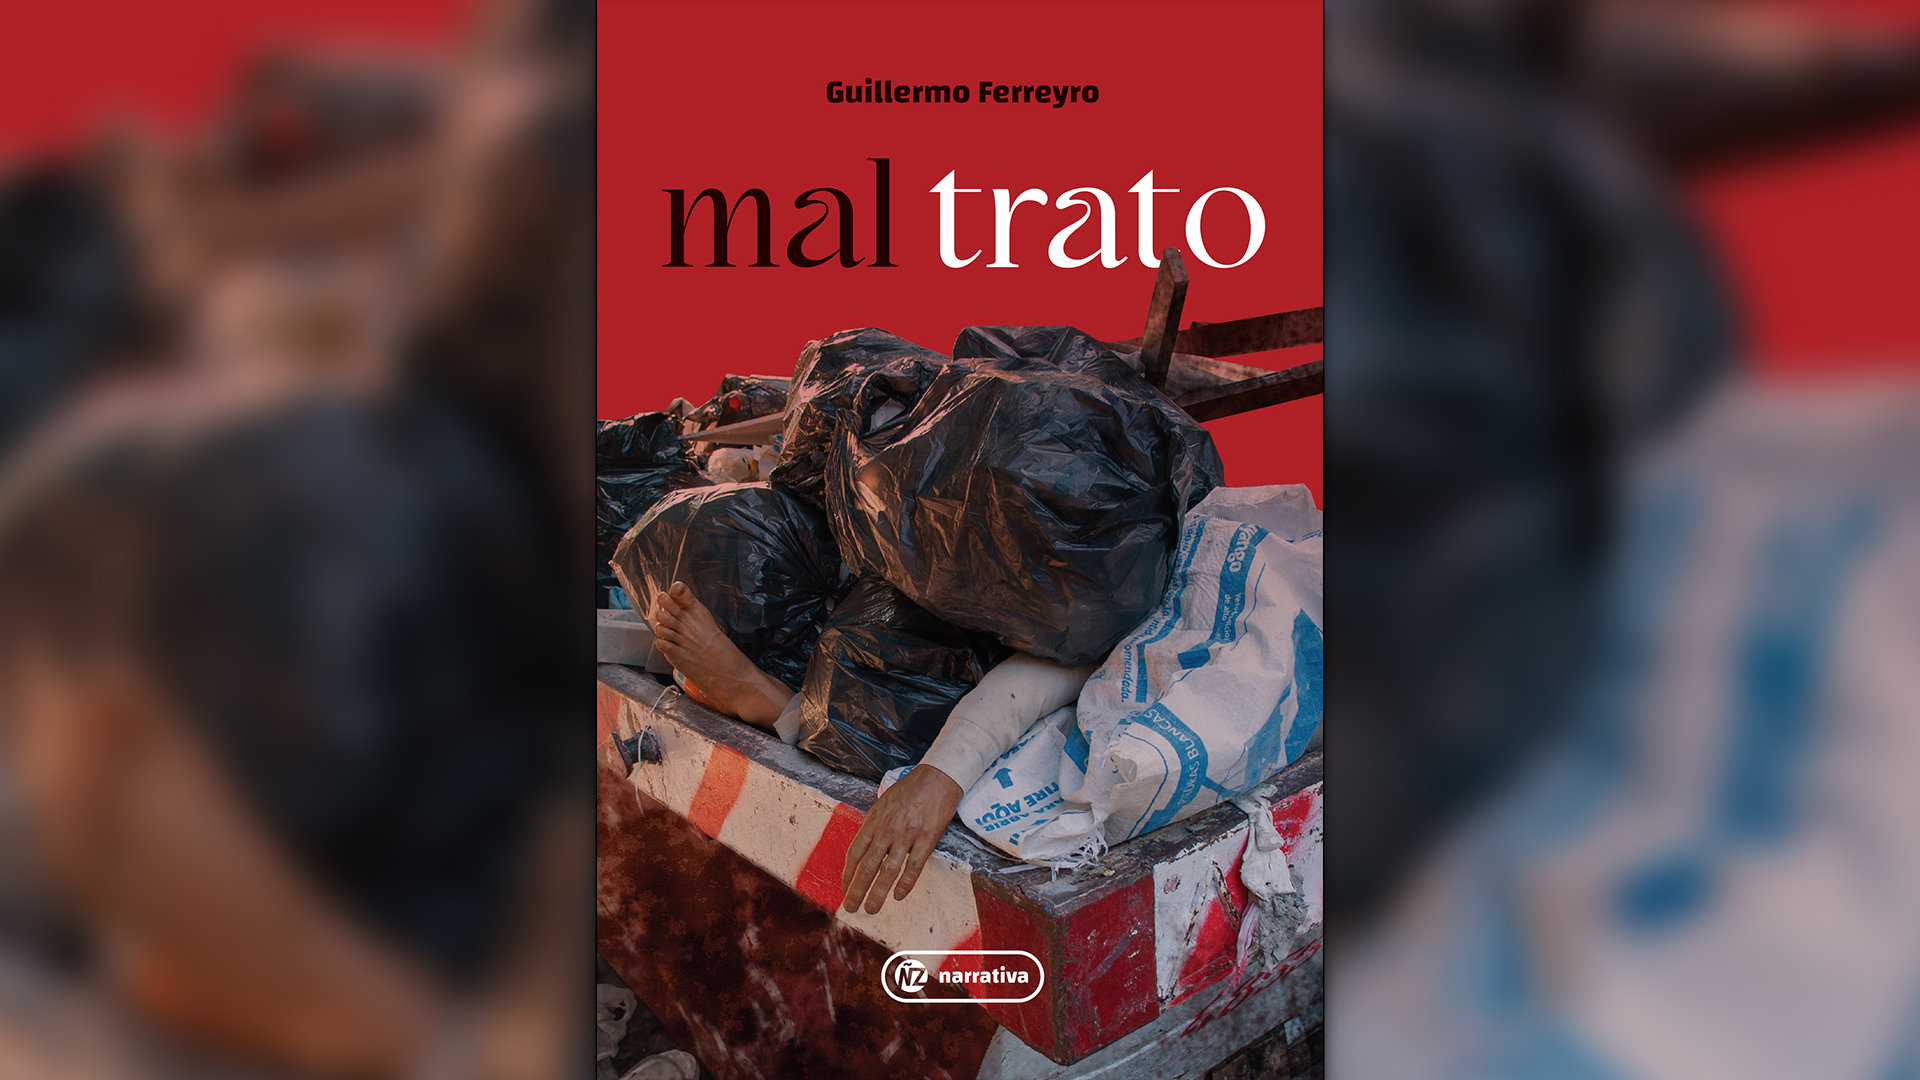 "Mal trato" (ÑZ Narrativa), de Guillermo Ferreyro